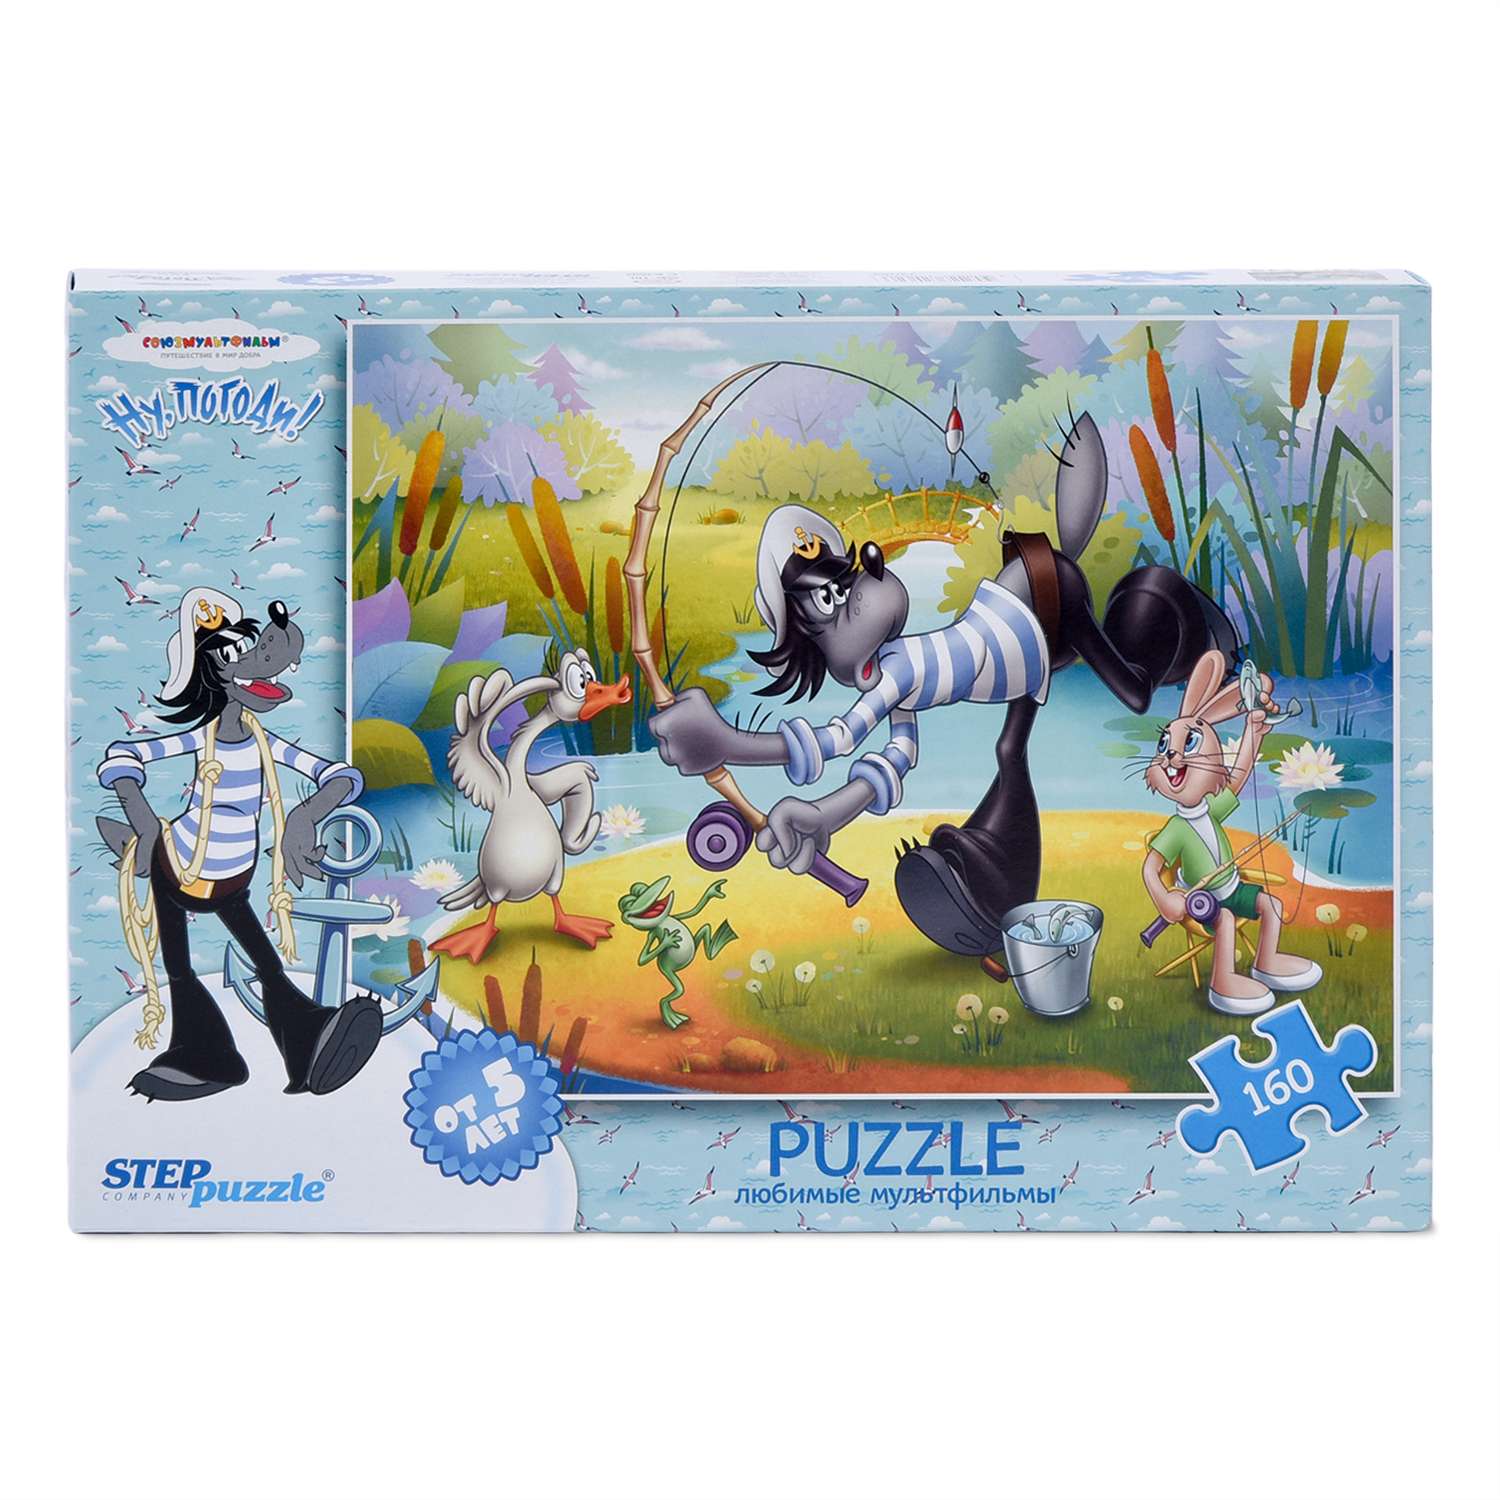 Пазлы Step Puzzle Союзмультфильм 160 элементов в ассортименте - фото 5